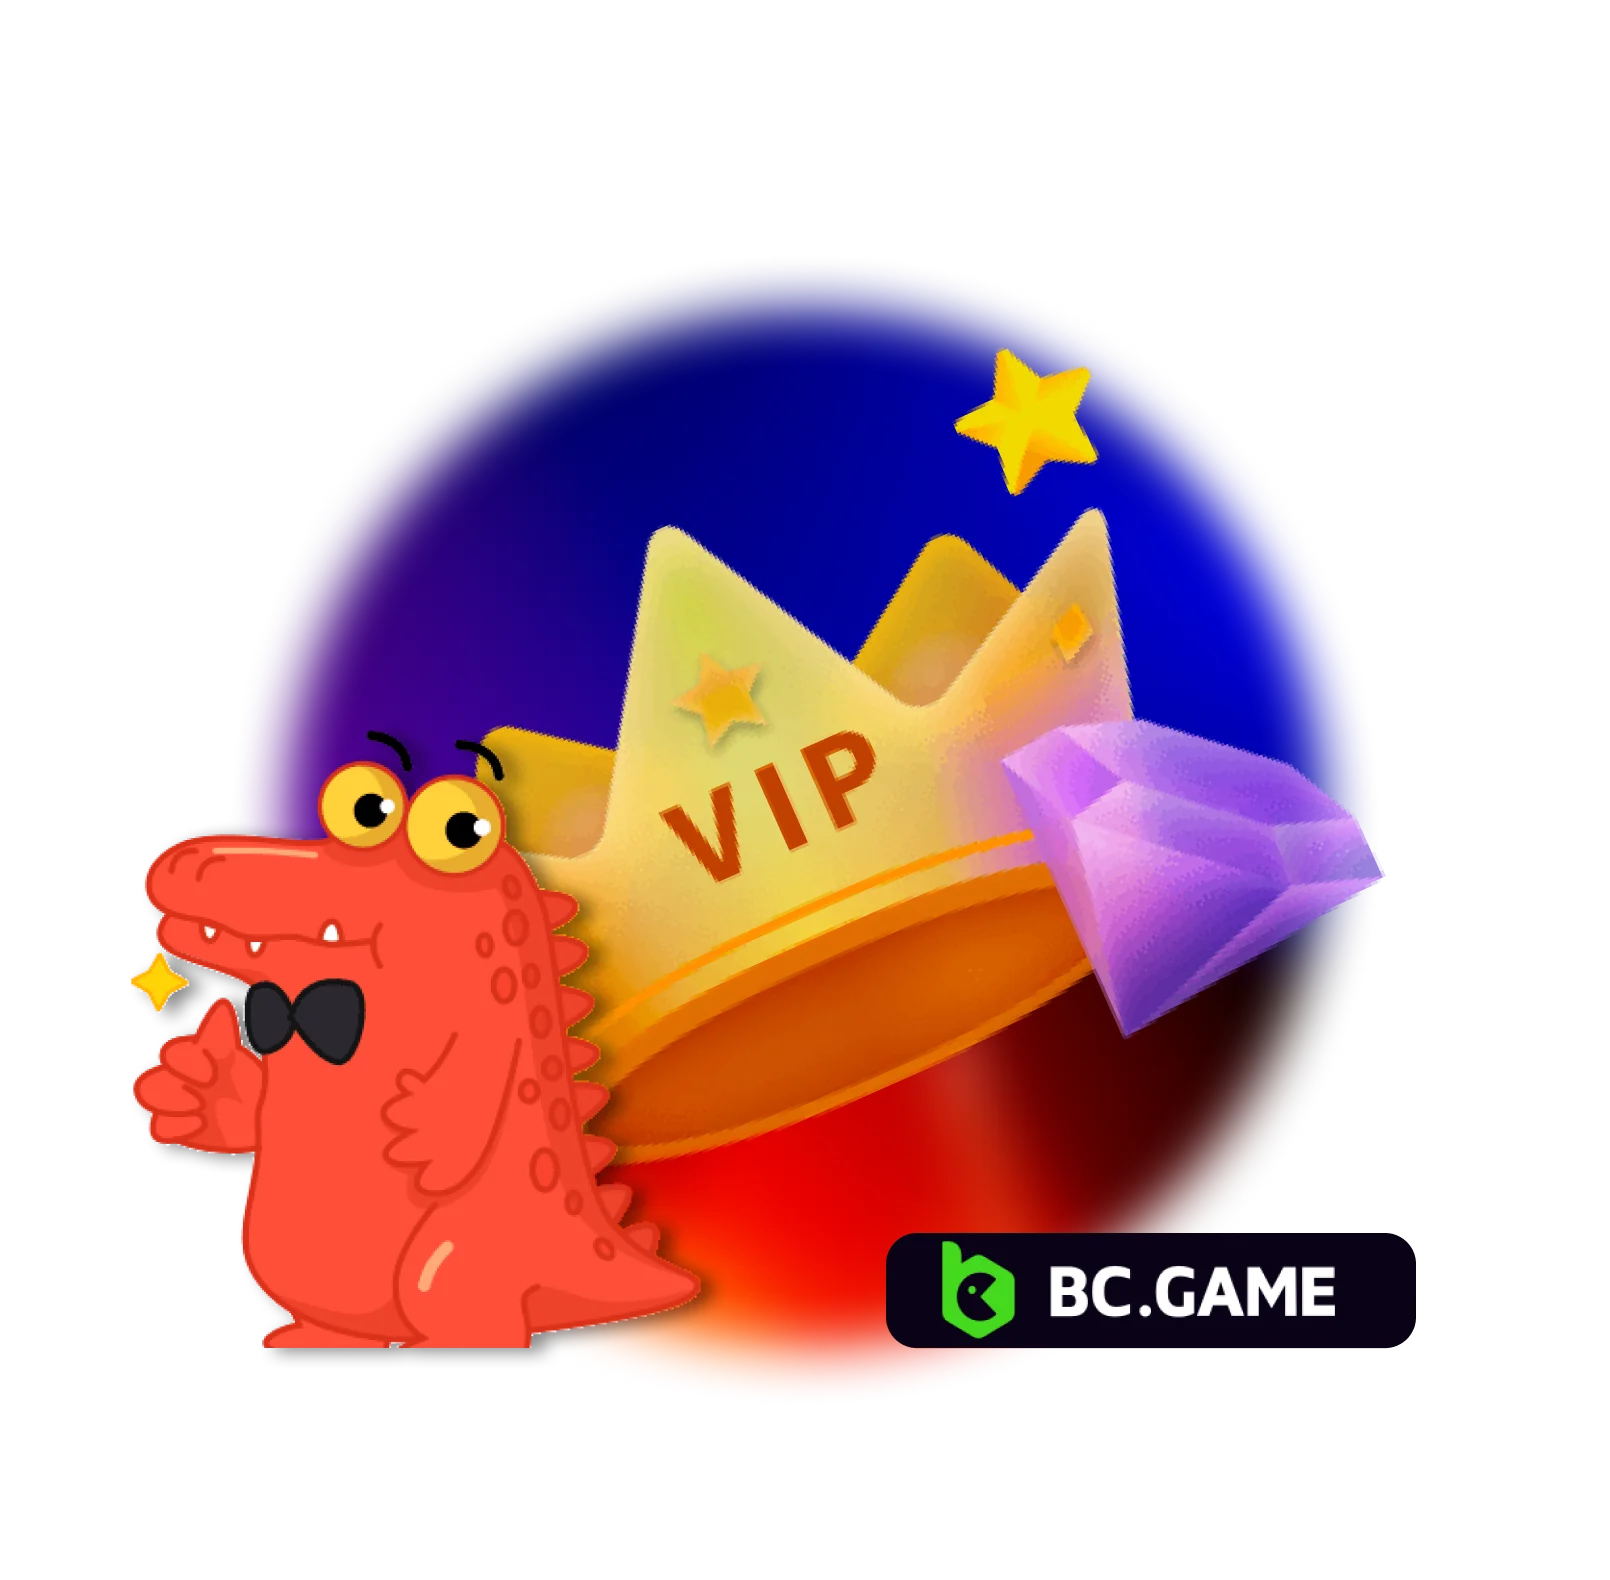 VIP club at BC Game